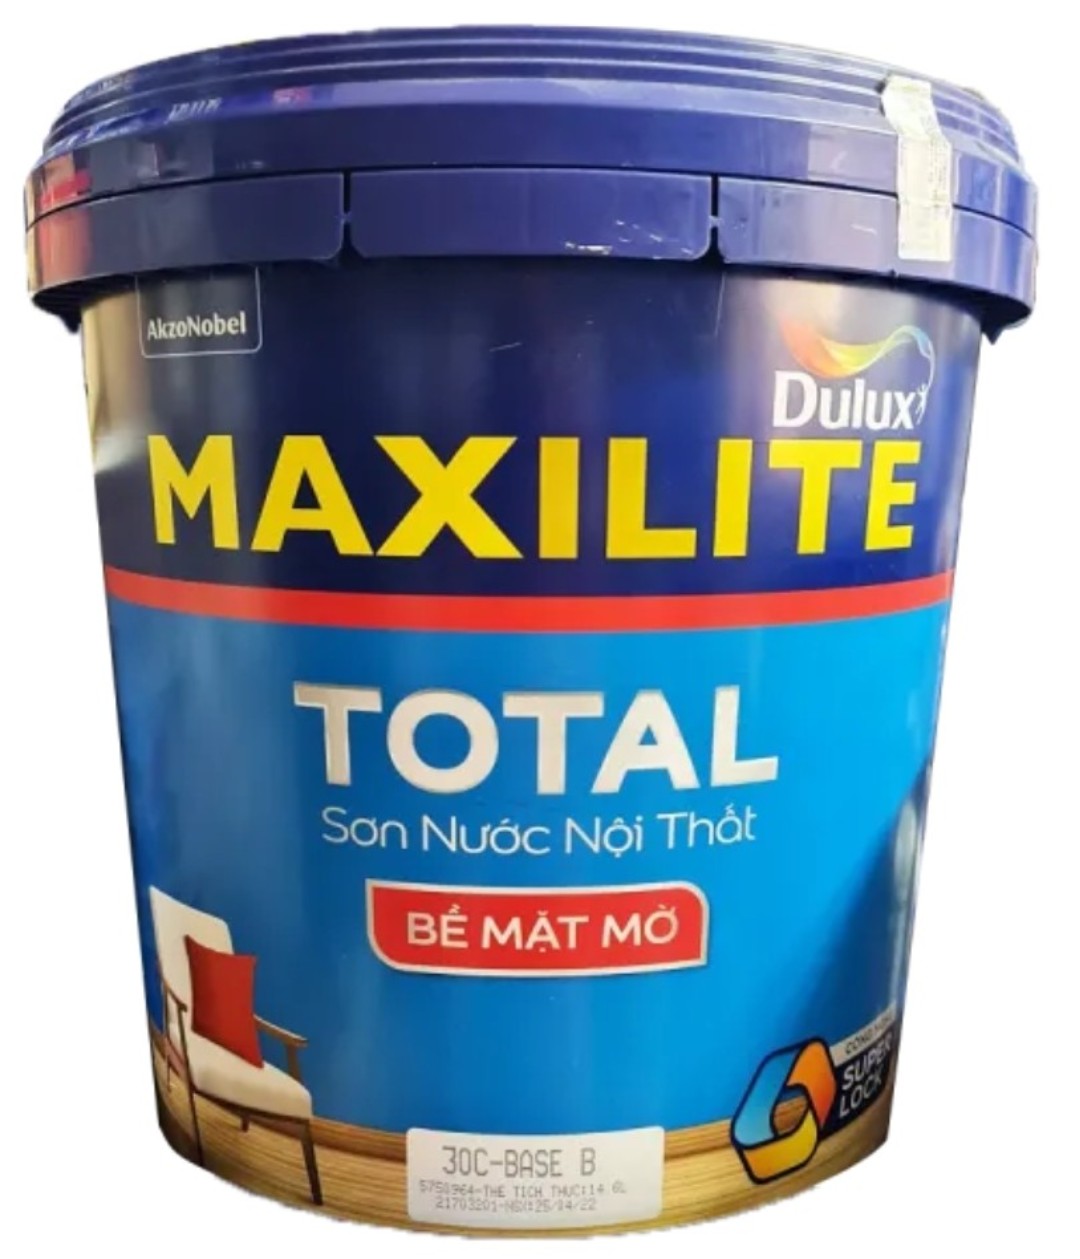 Sơn nước Maxilite trong nhà 21kg(15L) nhiều màu giá rẻ, sơn tường, sơn nhà, sơn phòng trang trí phòng khách, phòng ngủ, bền mầu lâu phai thay giấy dán tường- CAM KẾT CHÍNH HÃNG 100%